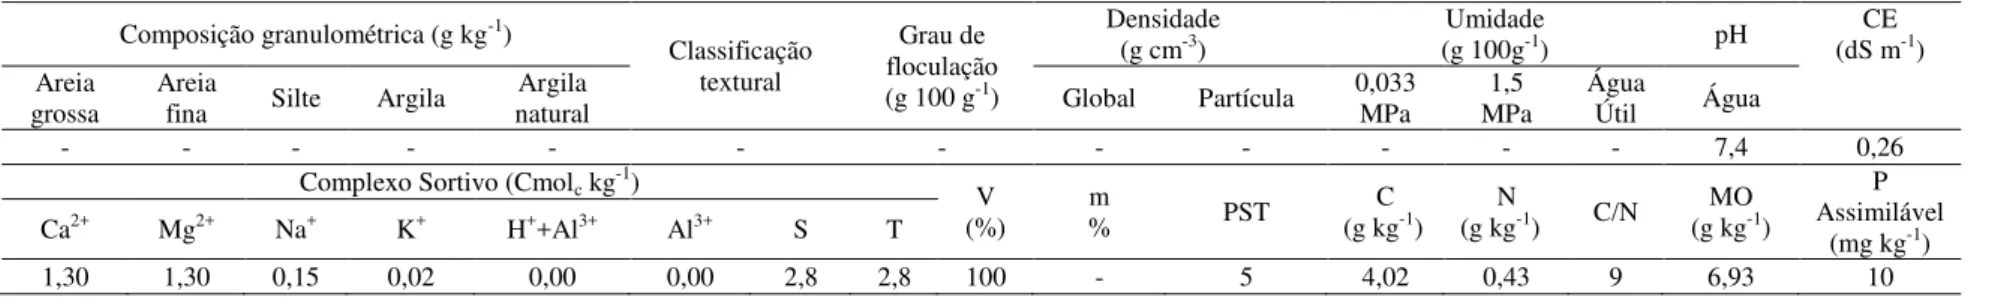 Tabela 1: Propriedades químicas do solo no município de Pindoretama, da comunidade Coqueiro do Lagamar no Estado do Ceará